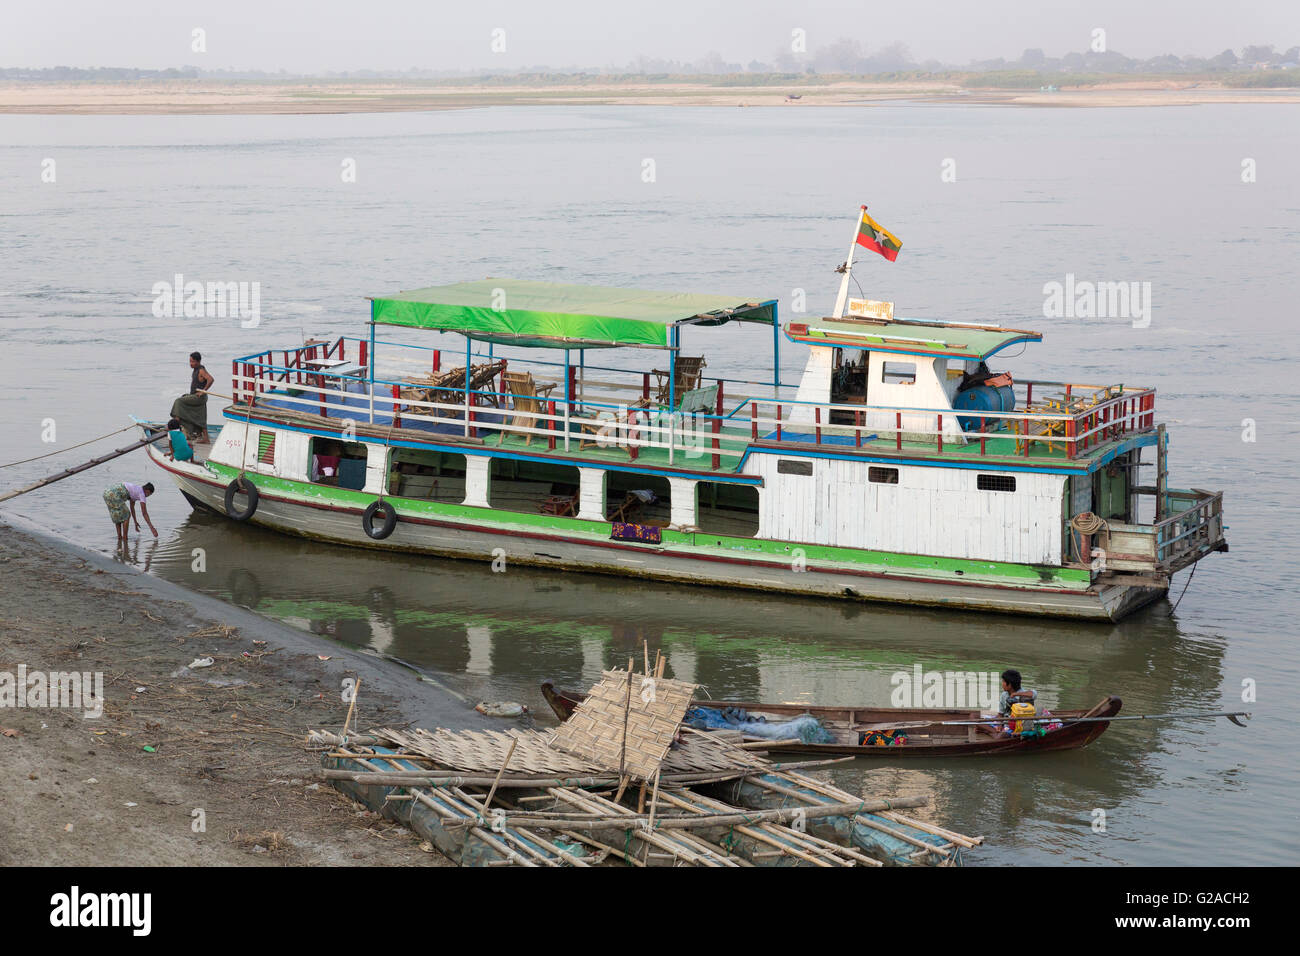 Bridge, boats and ferries between Bagan and Mandalay along the Irrawaddy river (Ayeyarwady river), Burma, Myanmar, South Asia Stock Photo